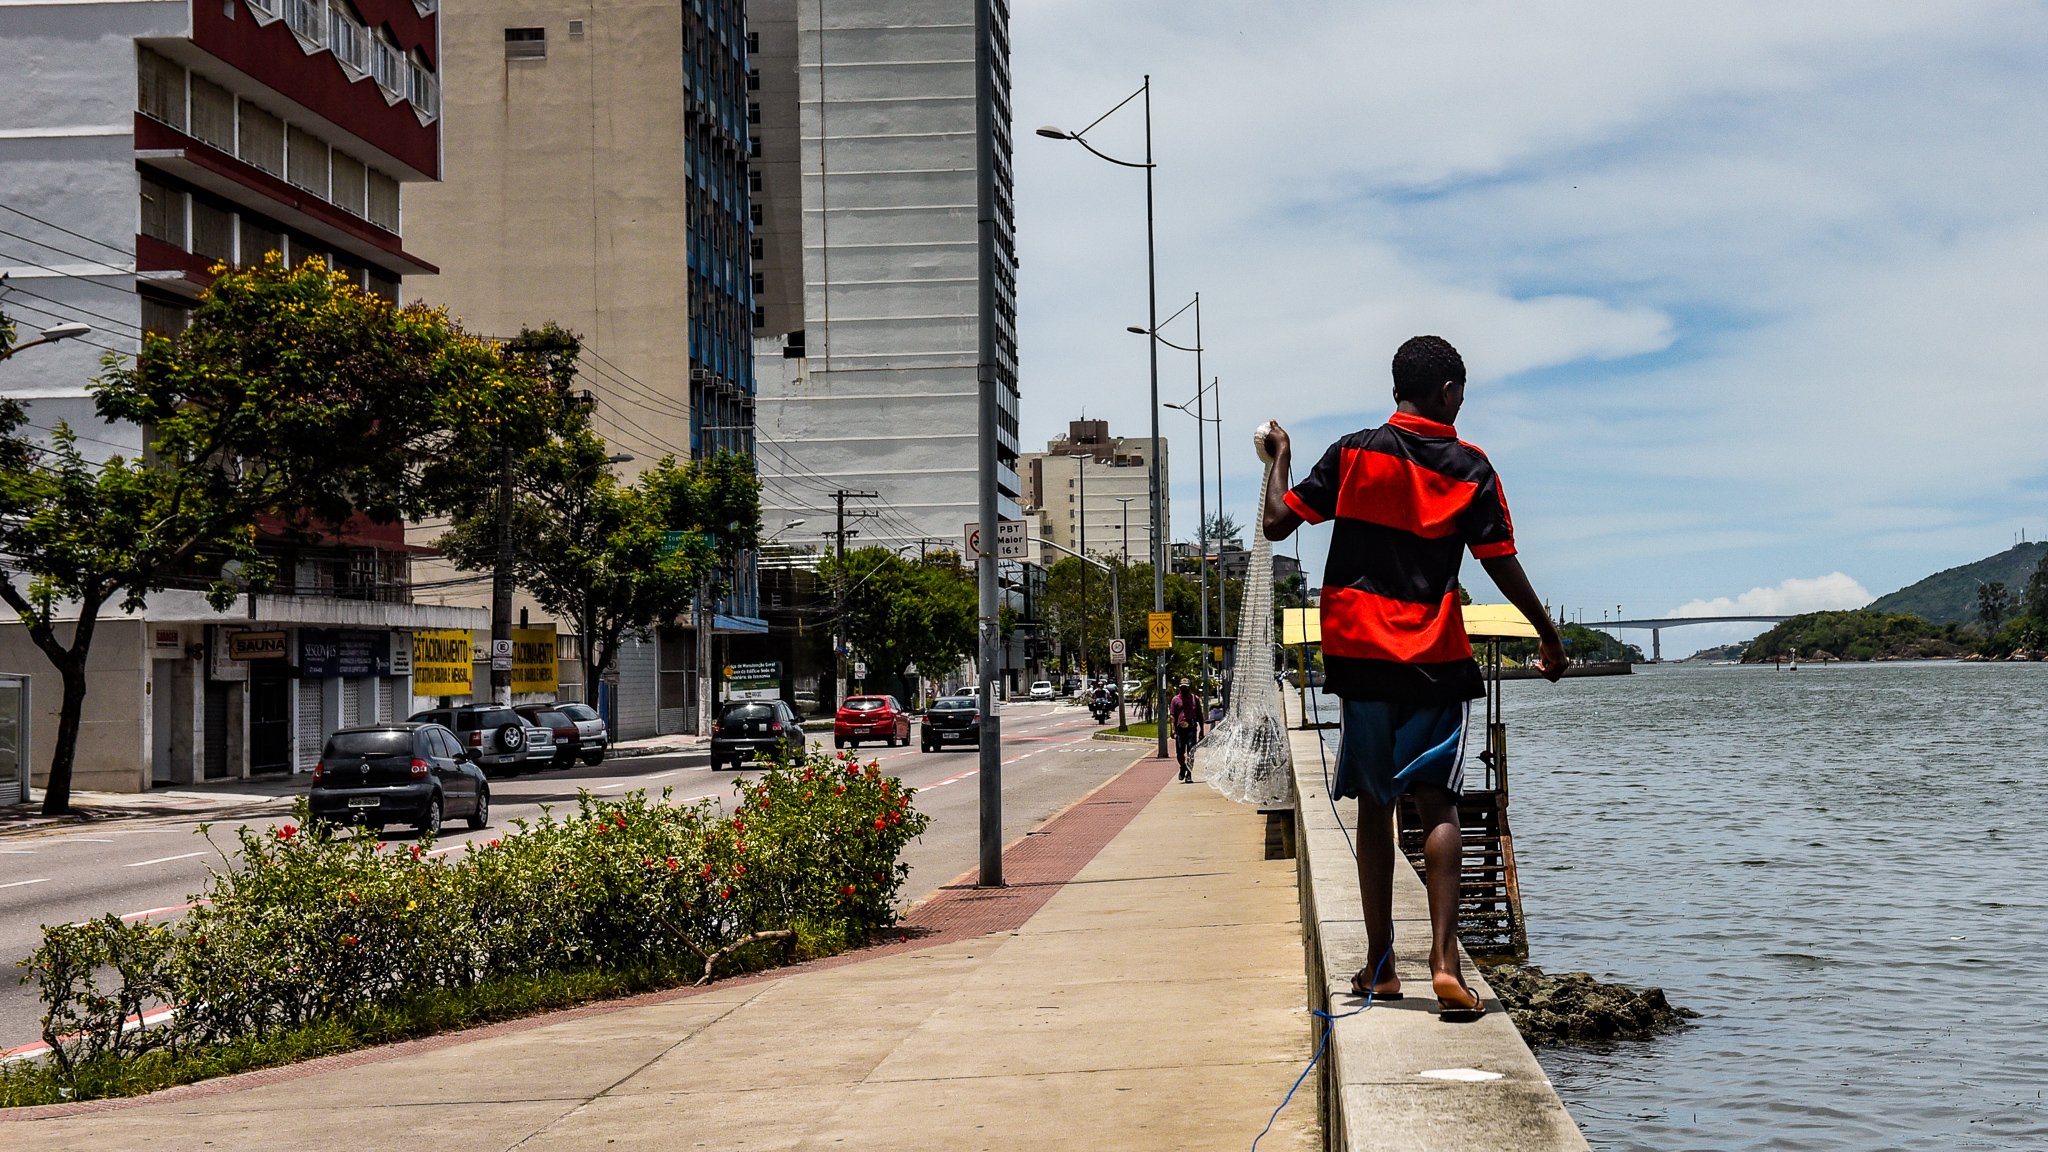 Famosa pelos grandes desfiles, a Avenida Beira-Mar serviu de palco para o bloco dos pescadores